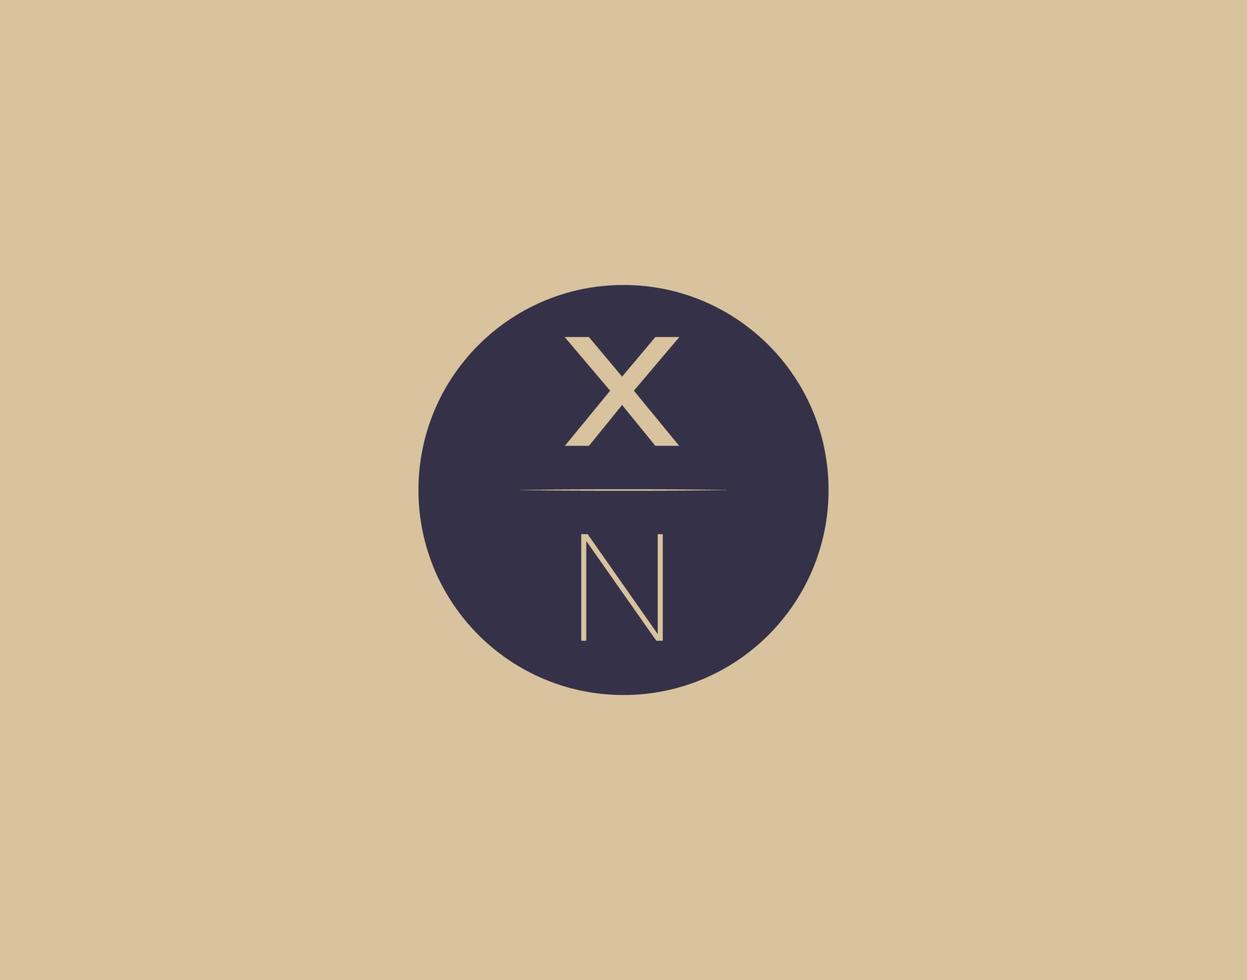 xn brief modern elegant logo ontwerp vector afbeeldingen